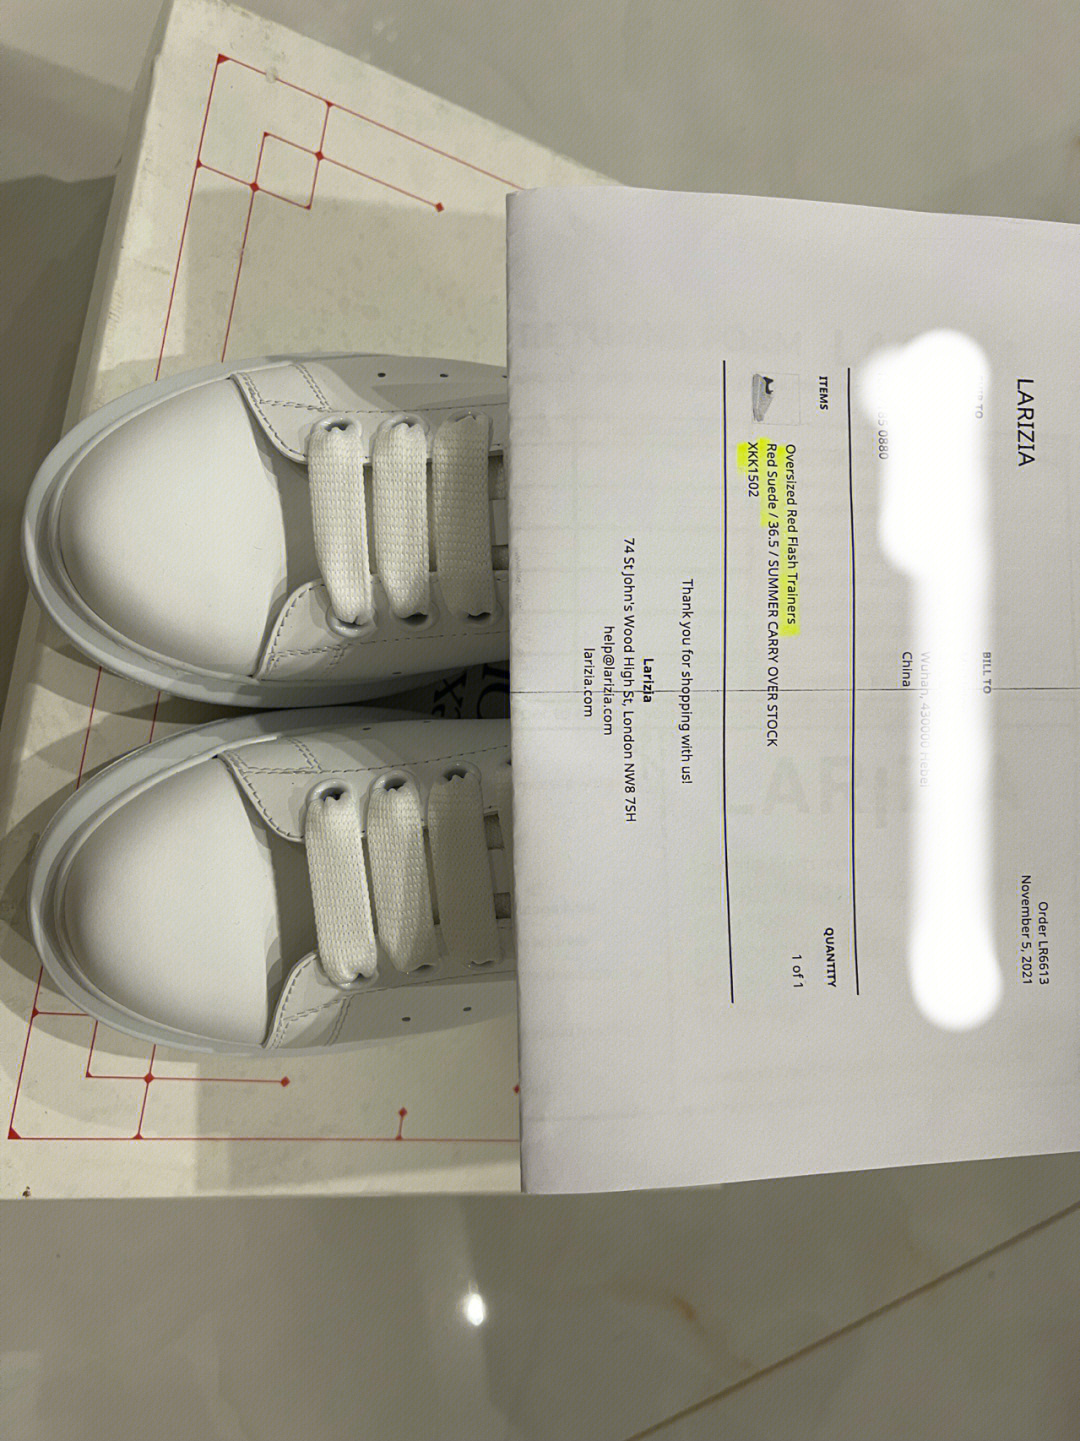 麦昆鞋子尺码对照表图片